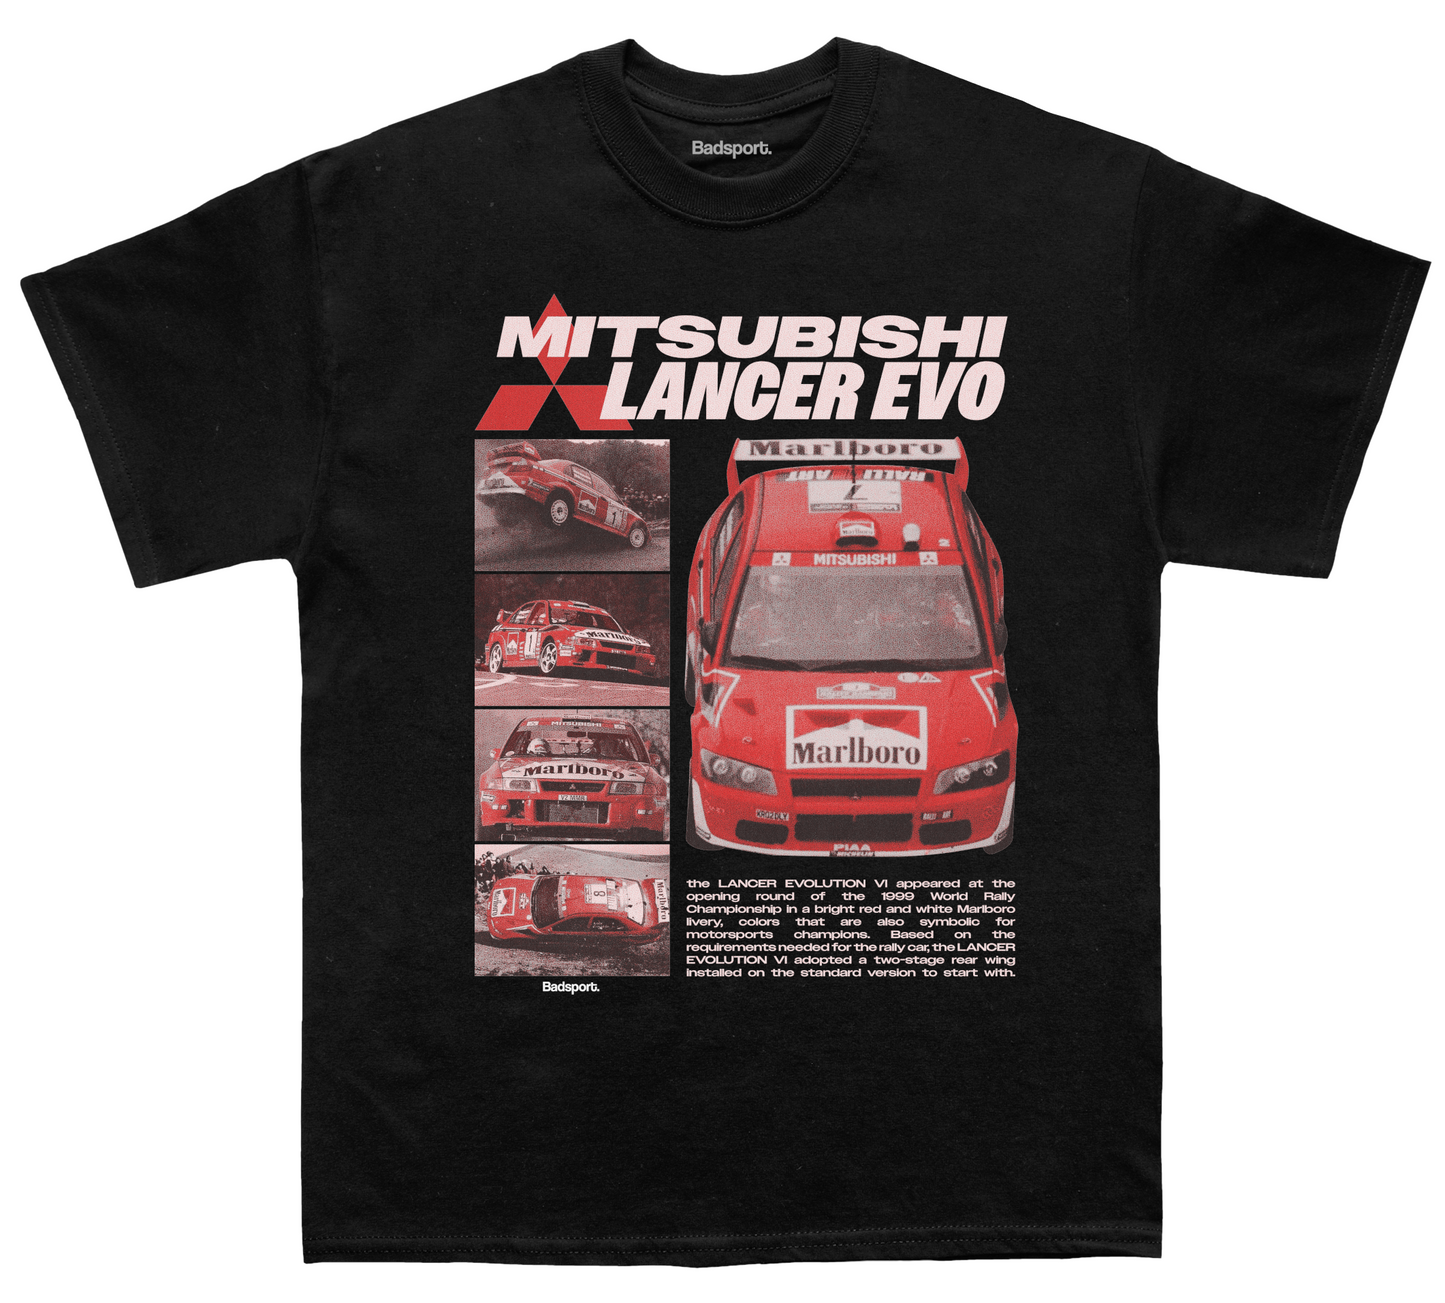 Lancer Evo T-shirt